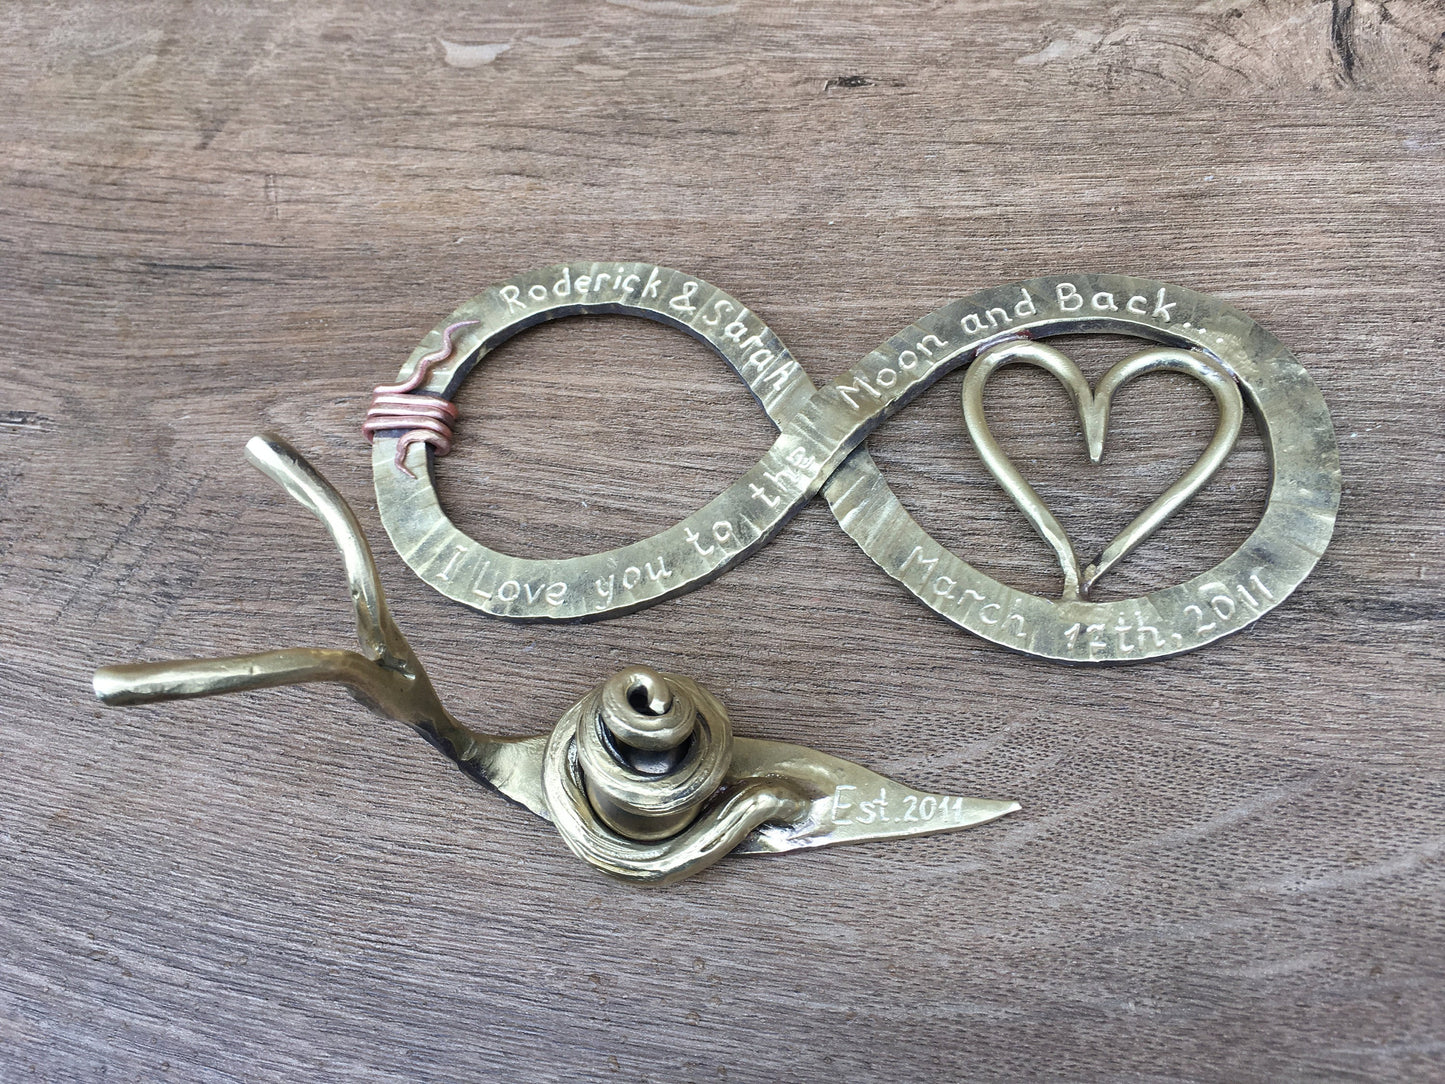 Bronze anniversary gift, 19th anniversary, bronze infinity sign, bronze snail, infinity sign, snail,bronze gift for wife,bronze gift for her